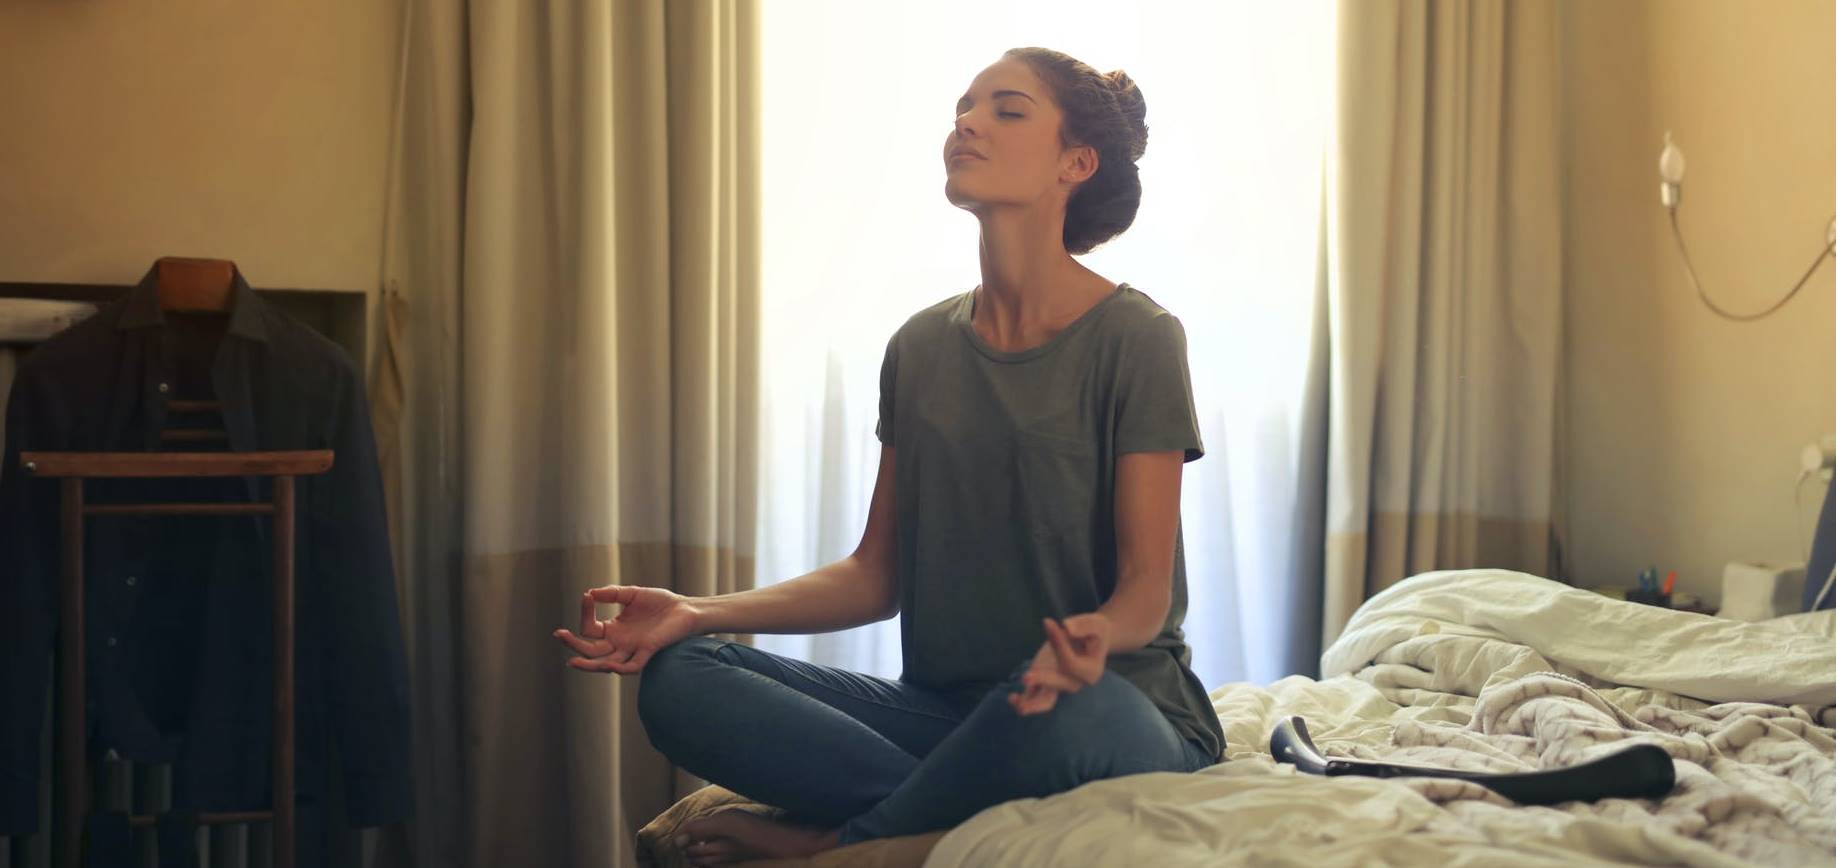 Zašto nam ponekad teško pada da meditiramo?